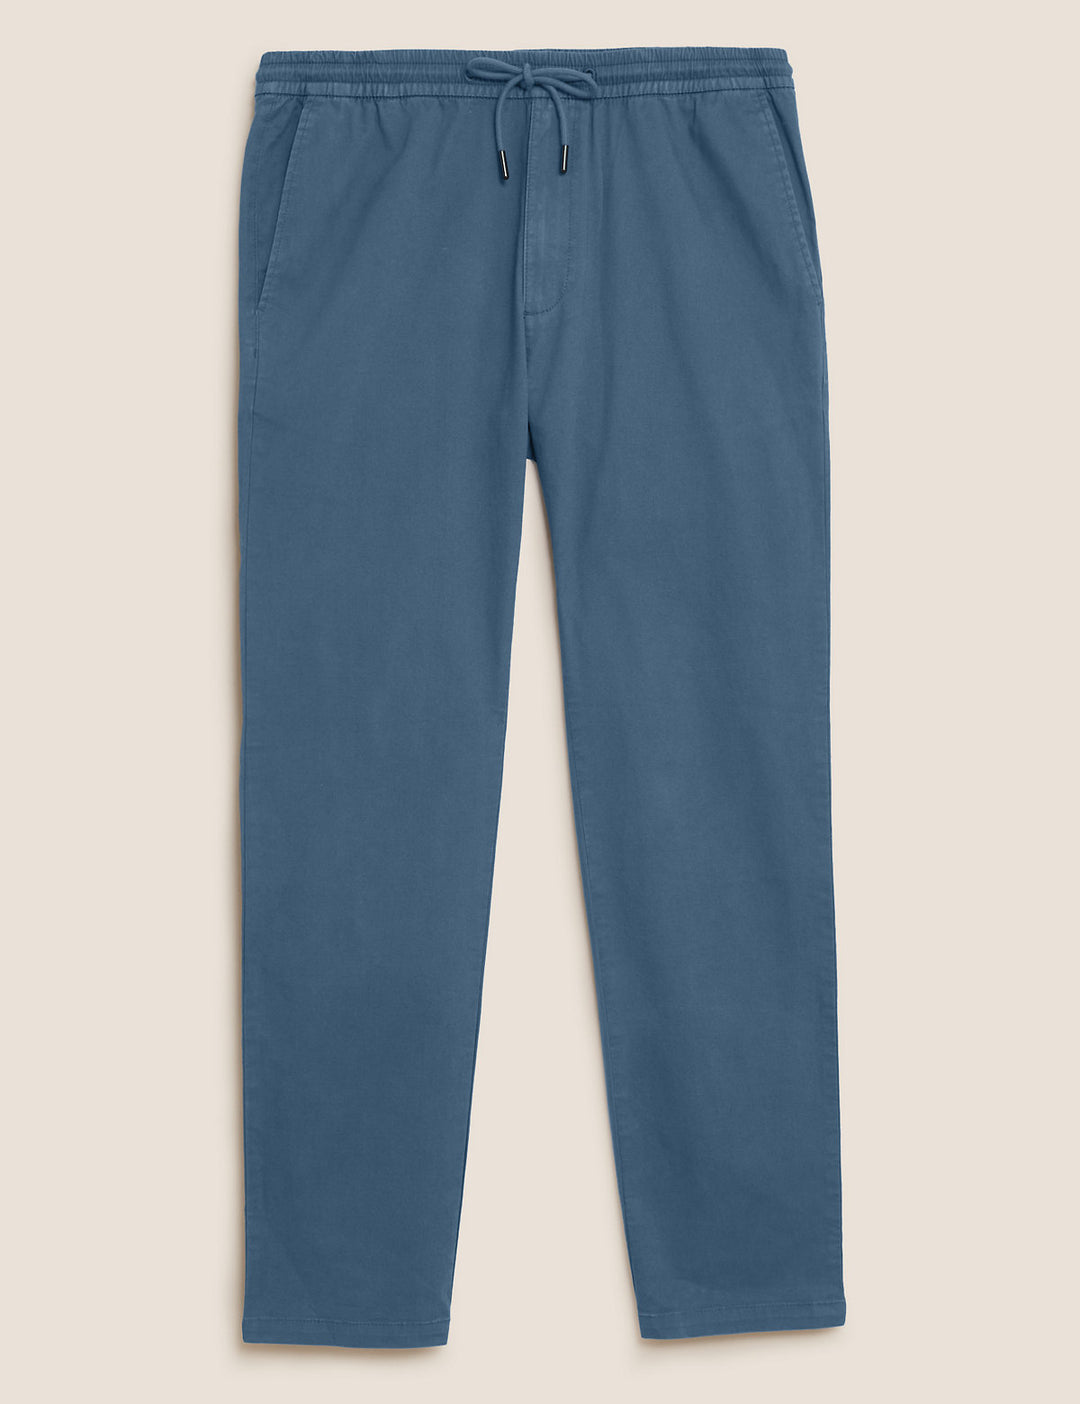 M&S Mens Cotton Trouser T17/6704